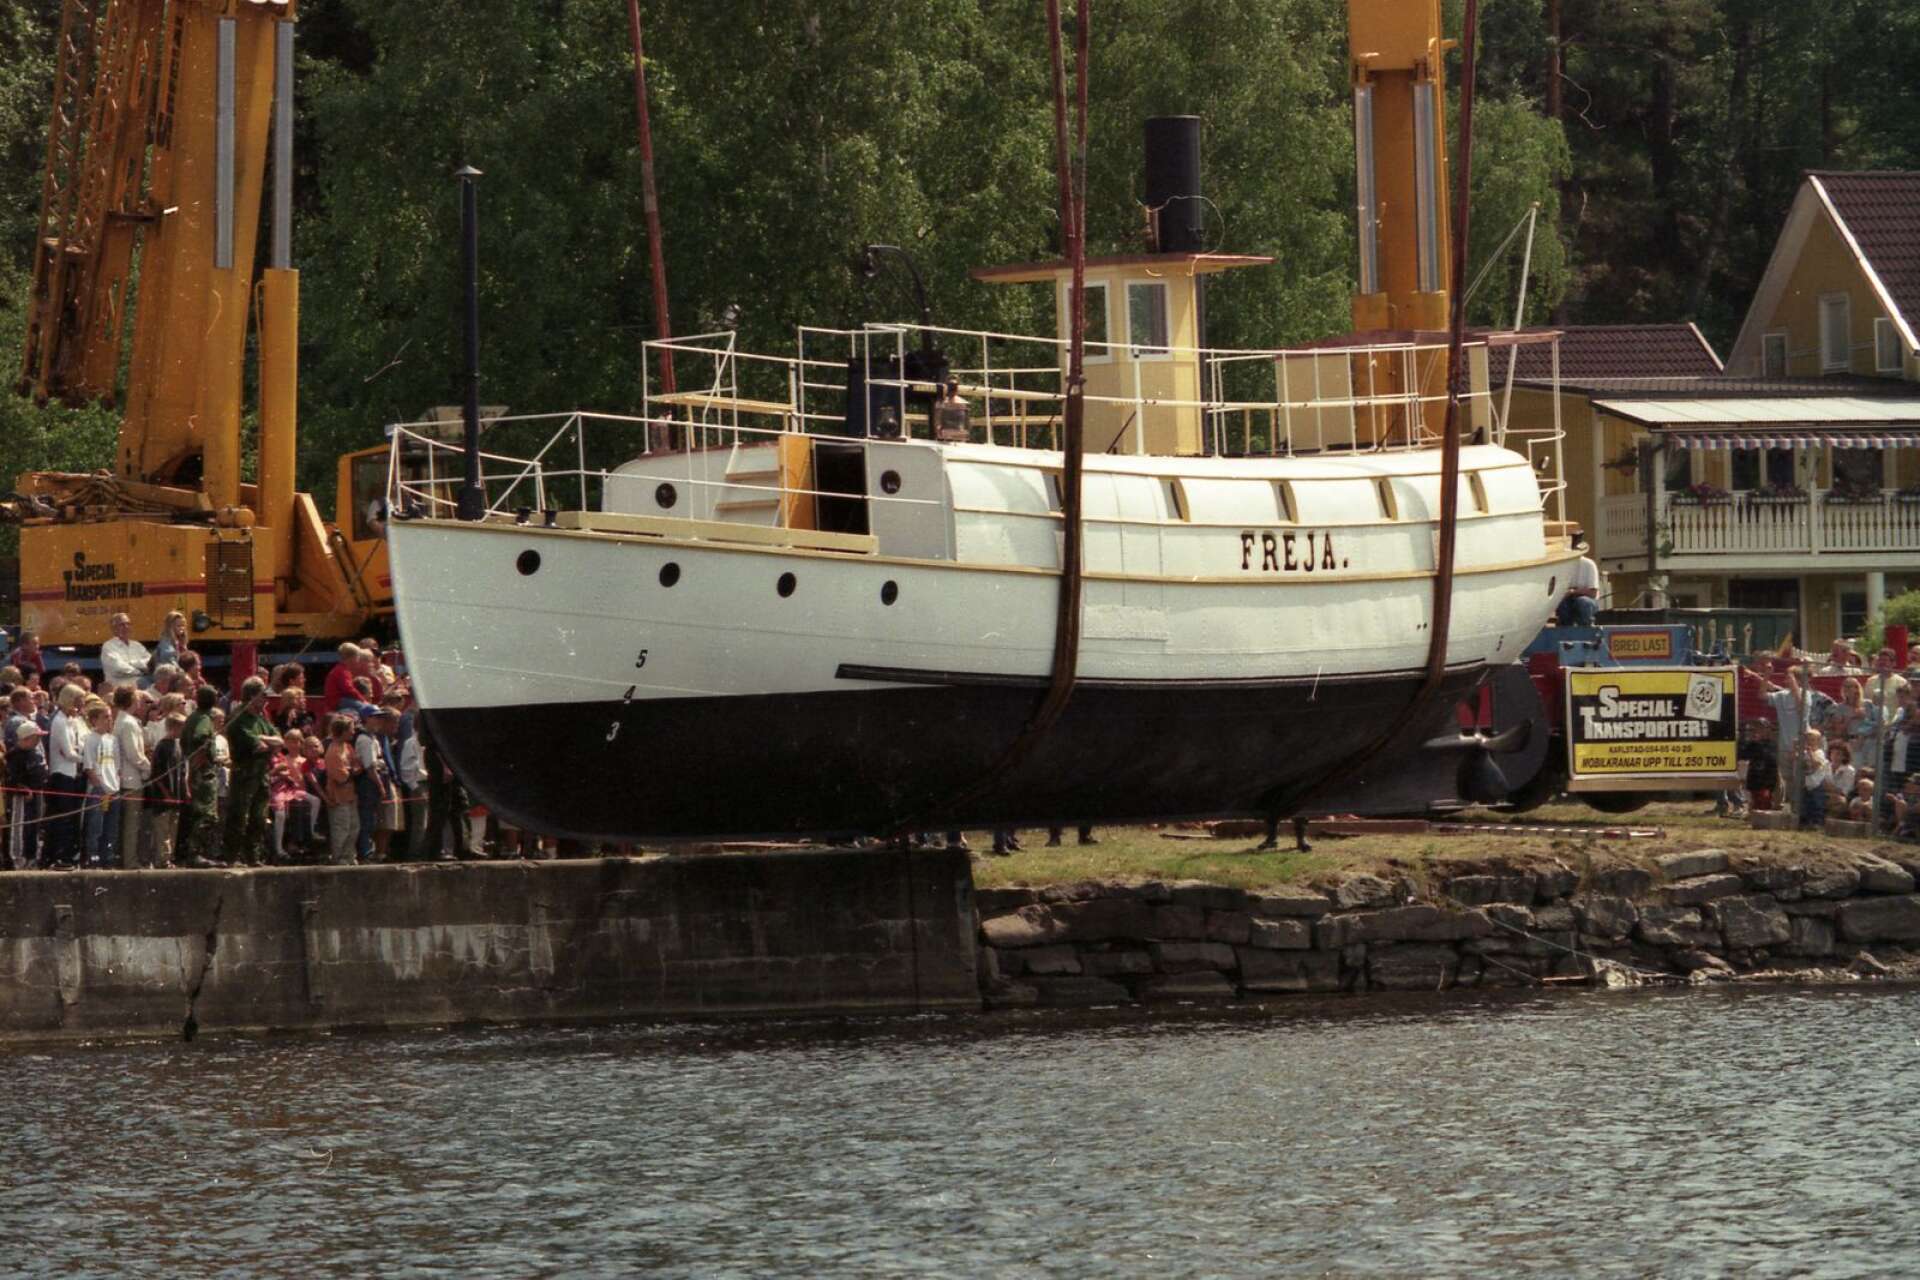 Så här såg det ut när Freja sjösattes efter renoveringen, 1997.